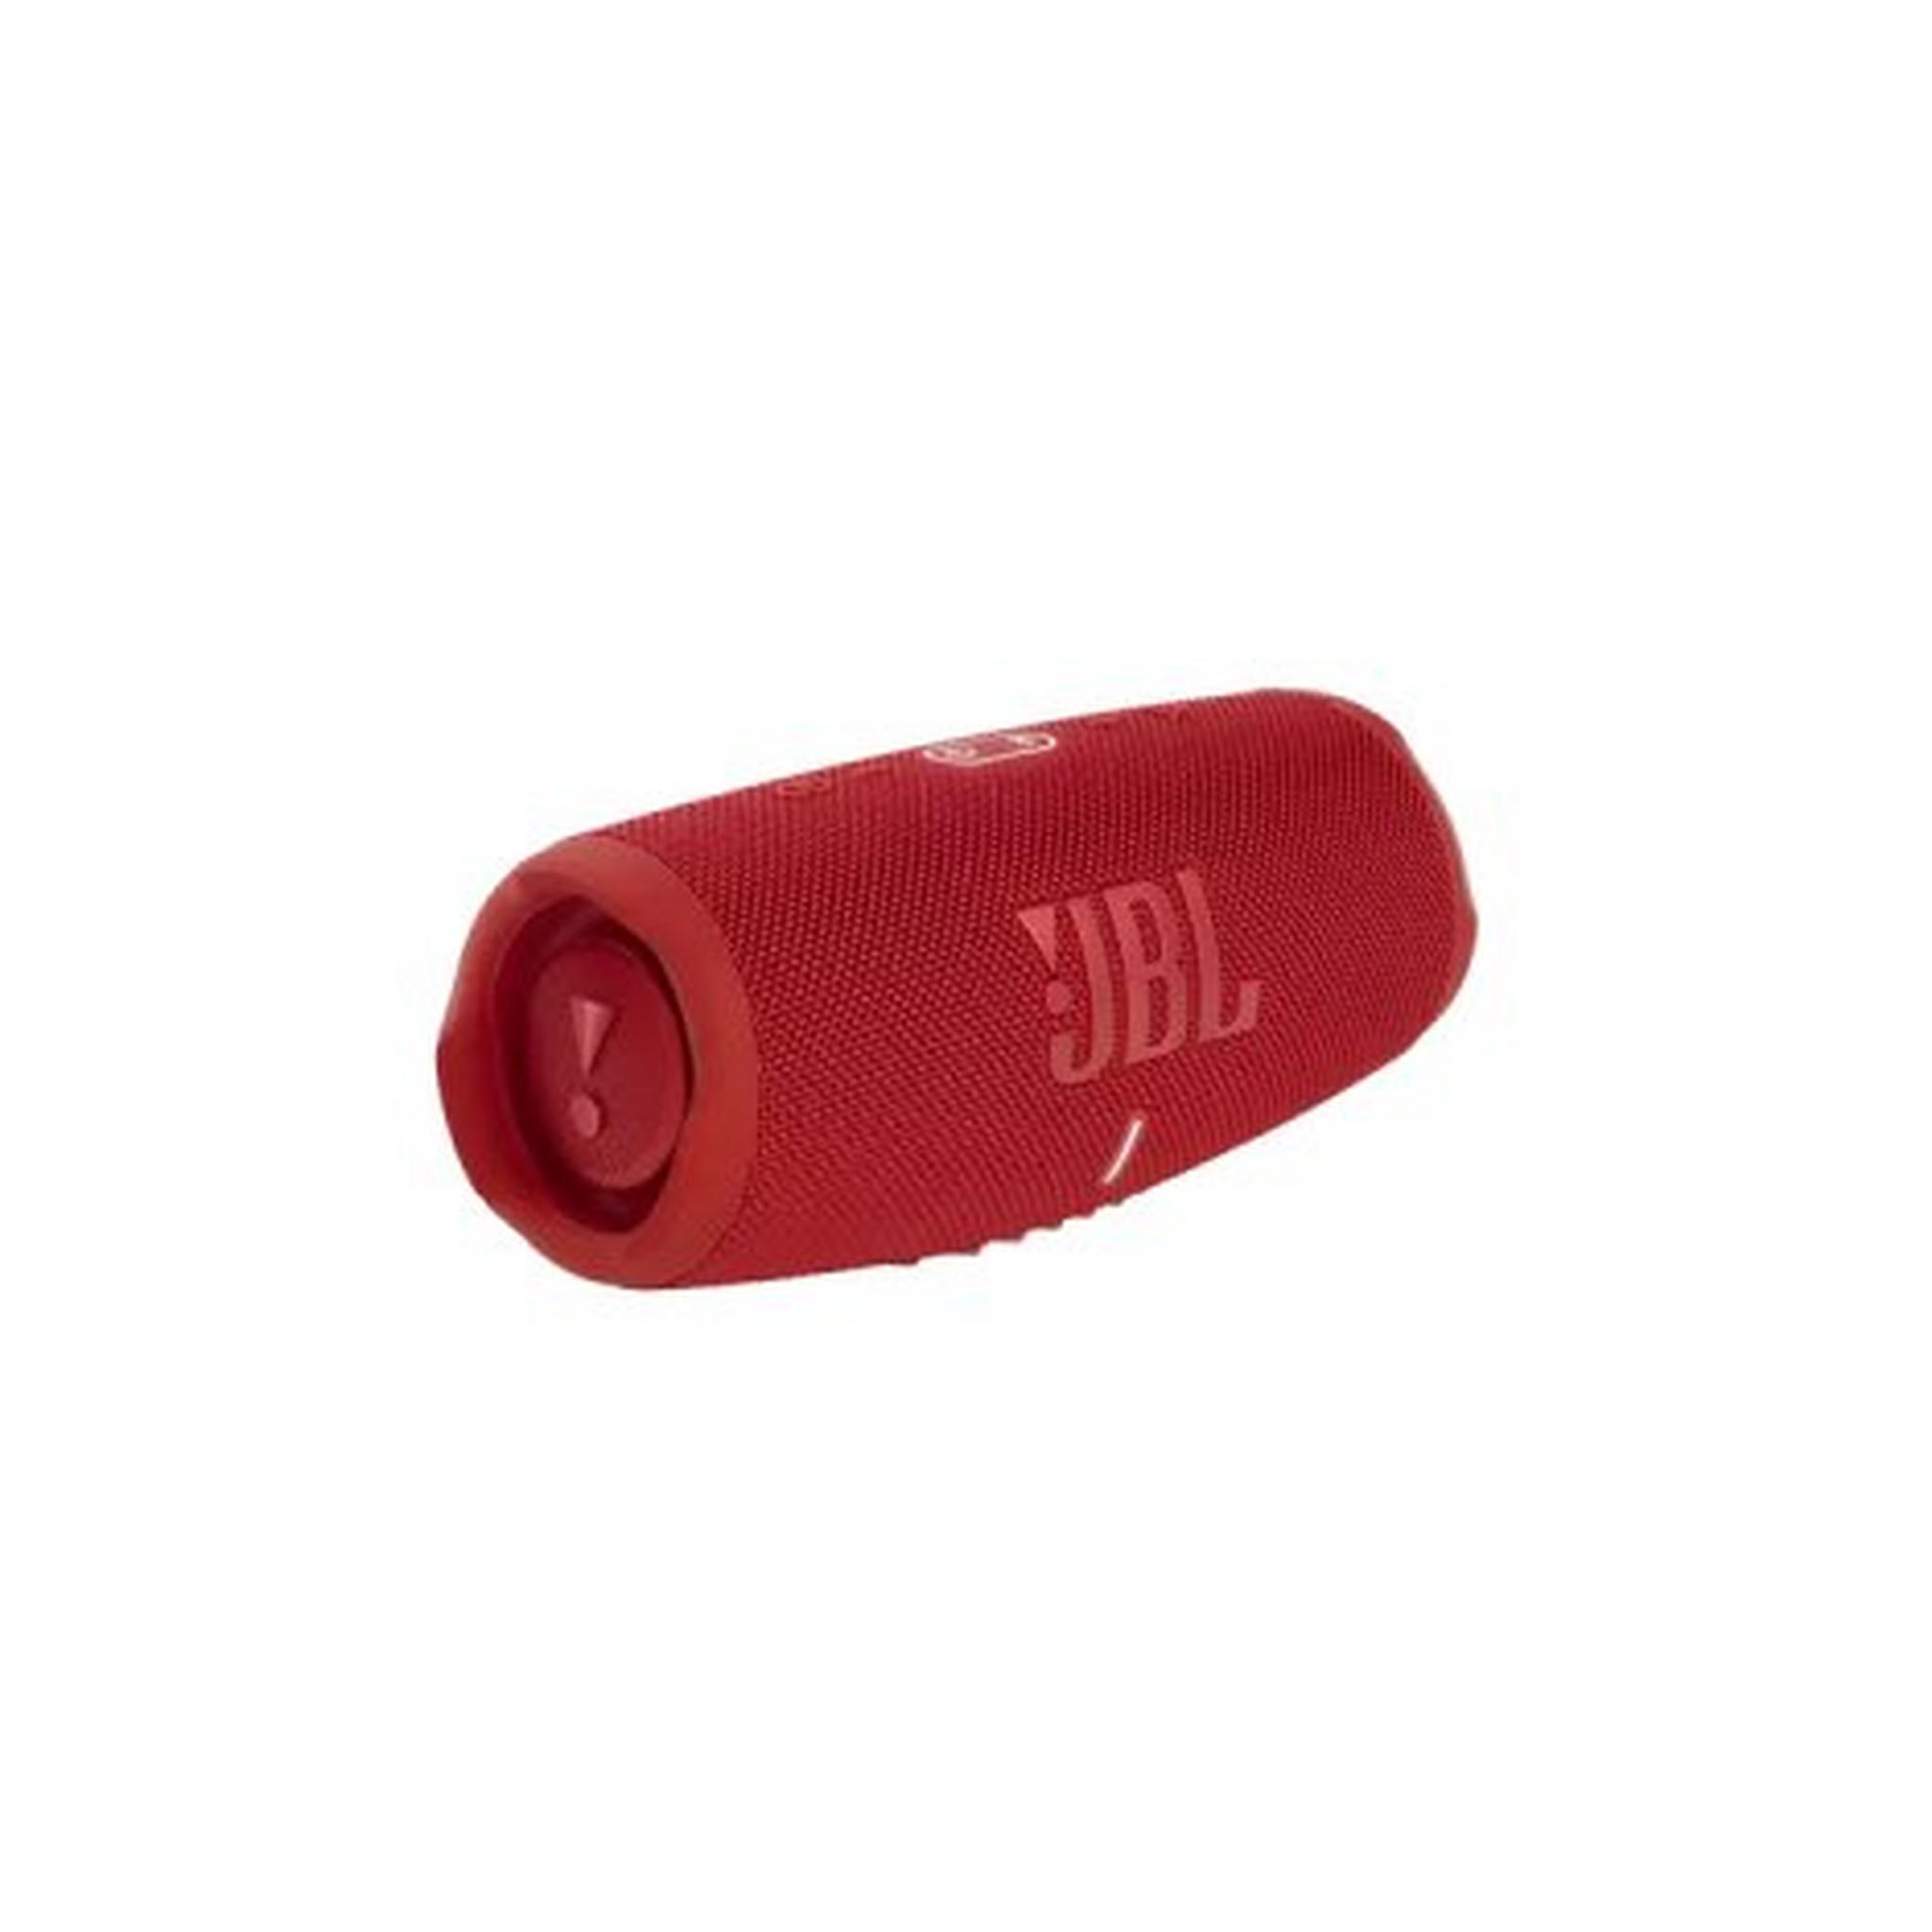 JBL Charge 5 Waterproof Wireless Speaker, JBLCHARGE5RED - Red